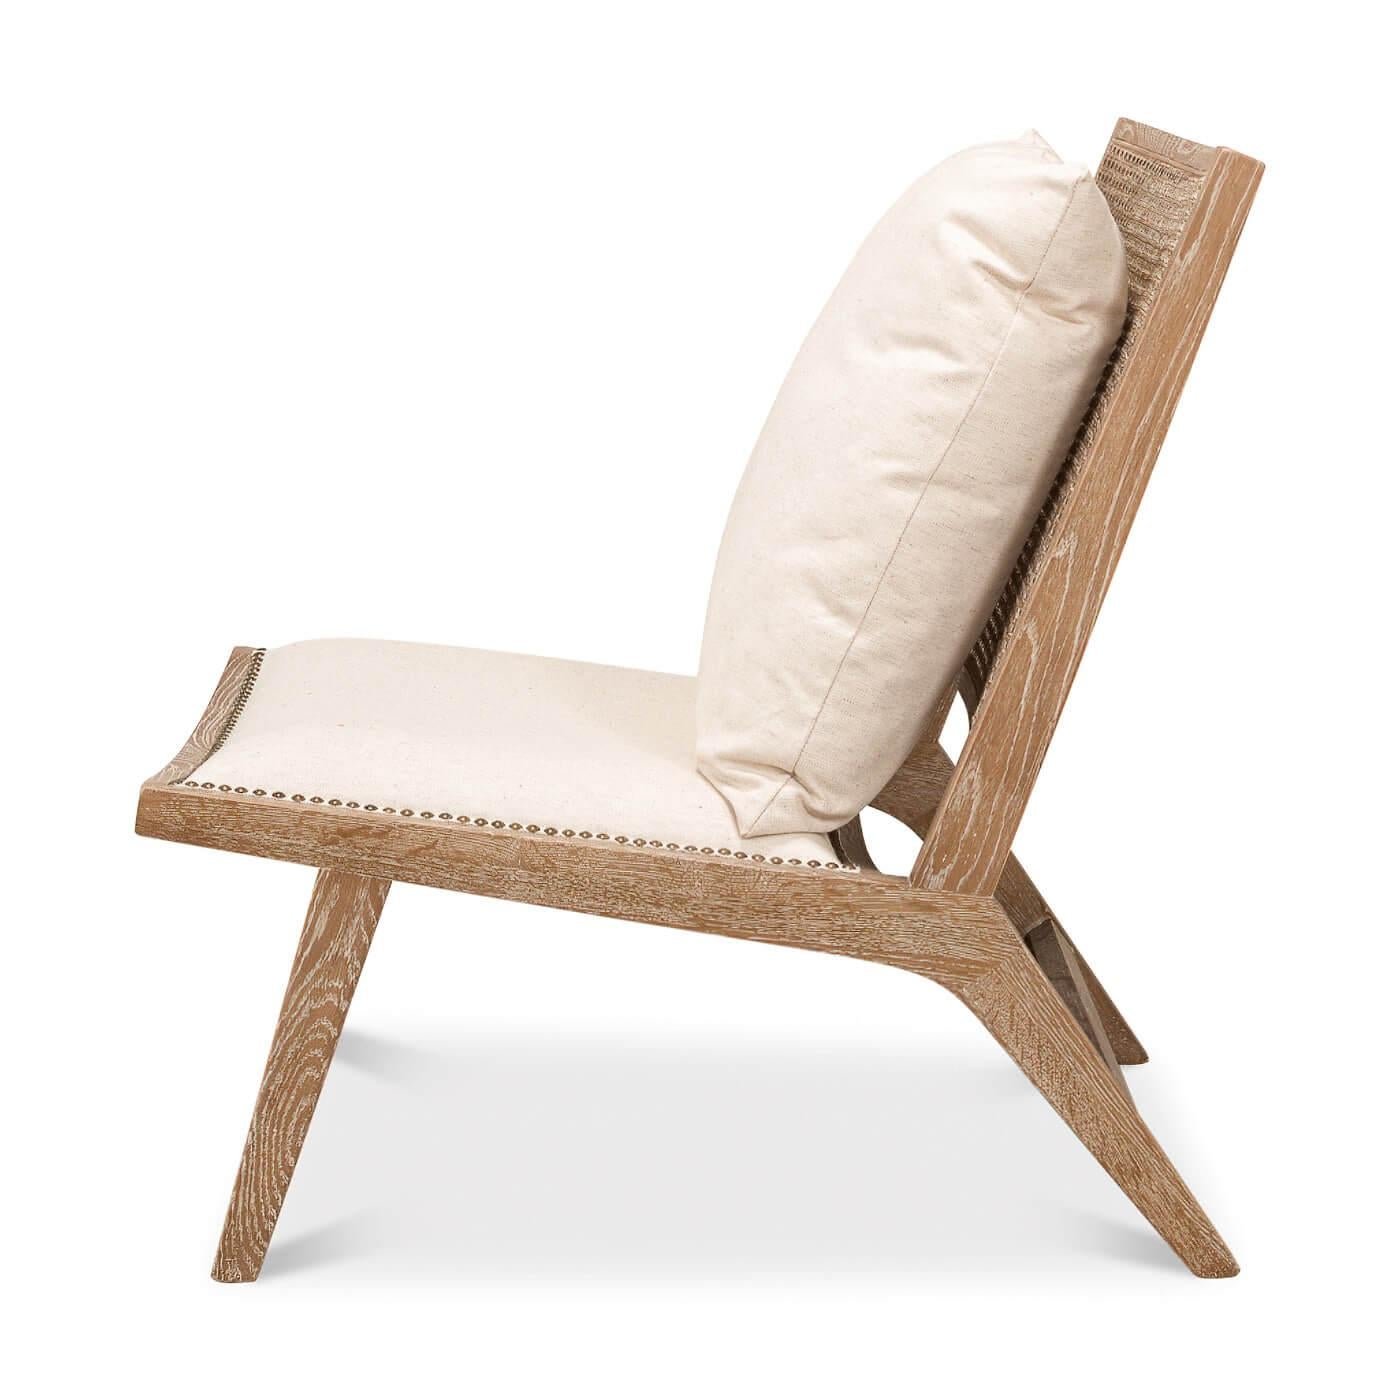 Ein Stuhl im Mid-Century-Stil mit weiß gekalkter Rohrrückenlehne und gepolstertem Sitz aus Leinen, der mit Nagelkopfleisten verziert ist. Es enthält ein loses Kissen für den Rücken. 

Abmessungen: 25